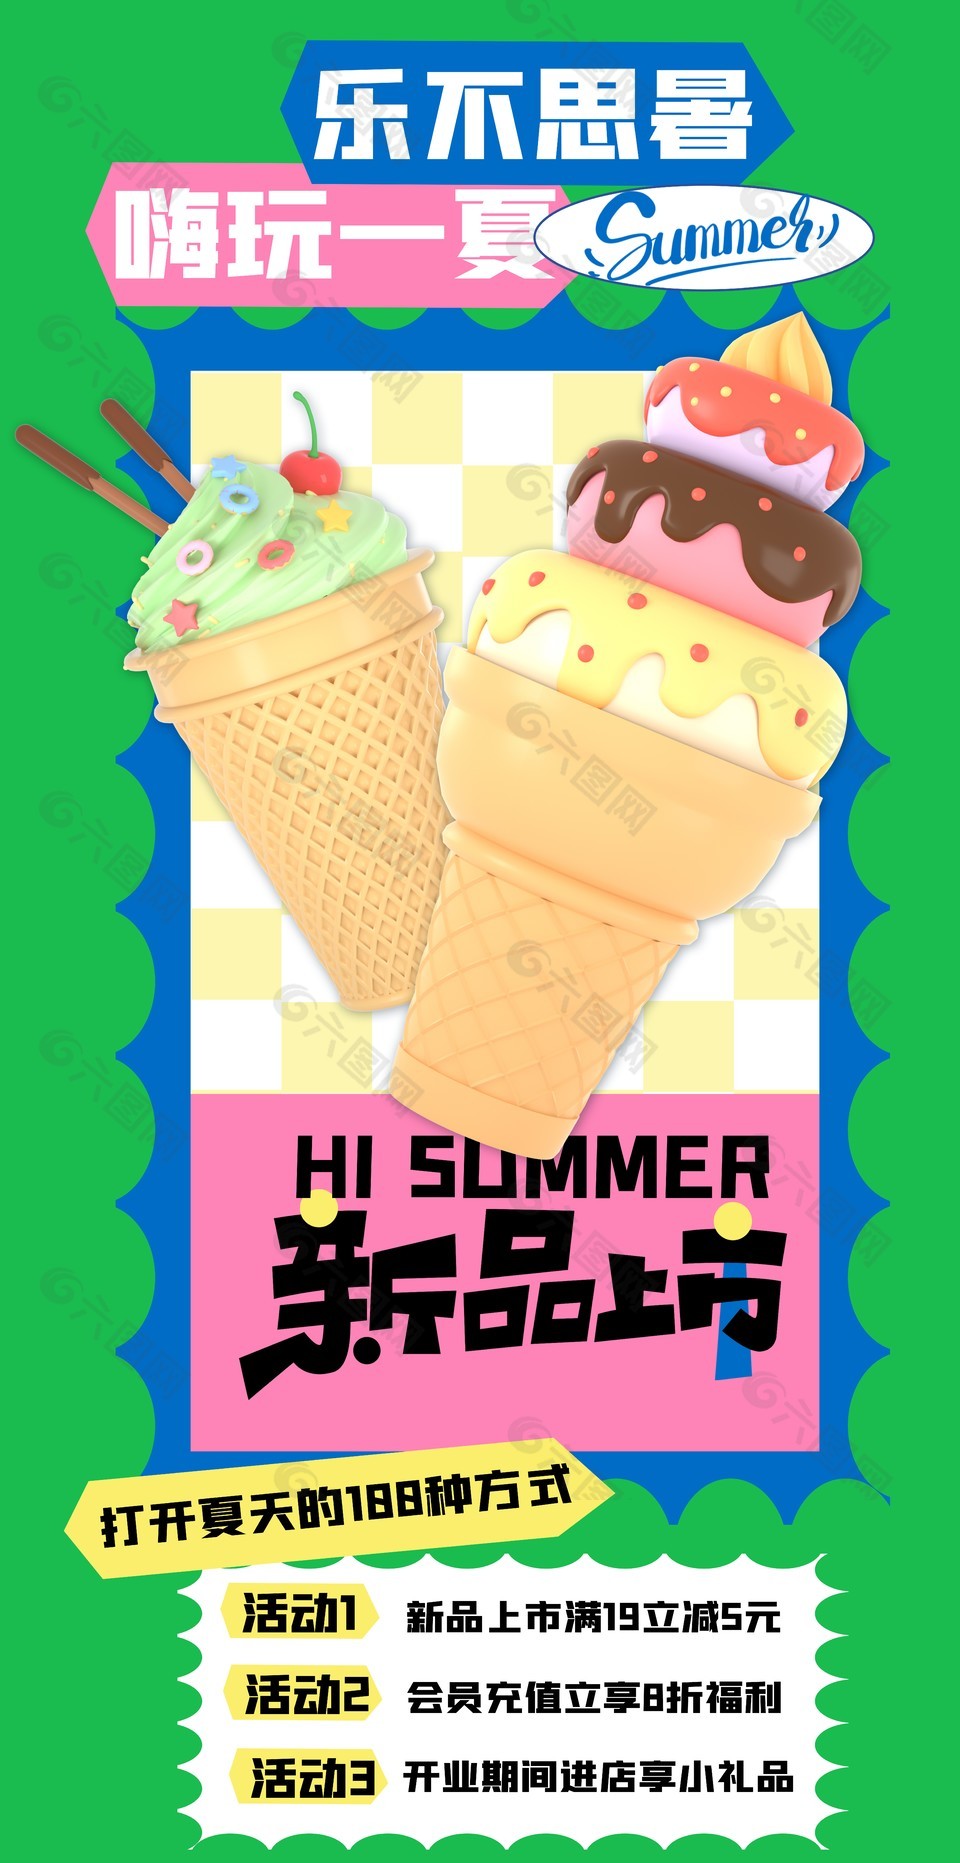 夏日新品上市活动冰淇淋元素海报模版设计